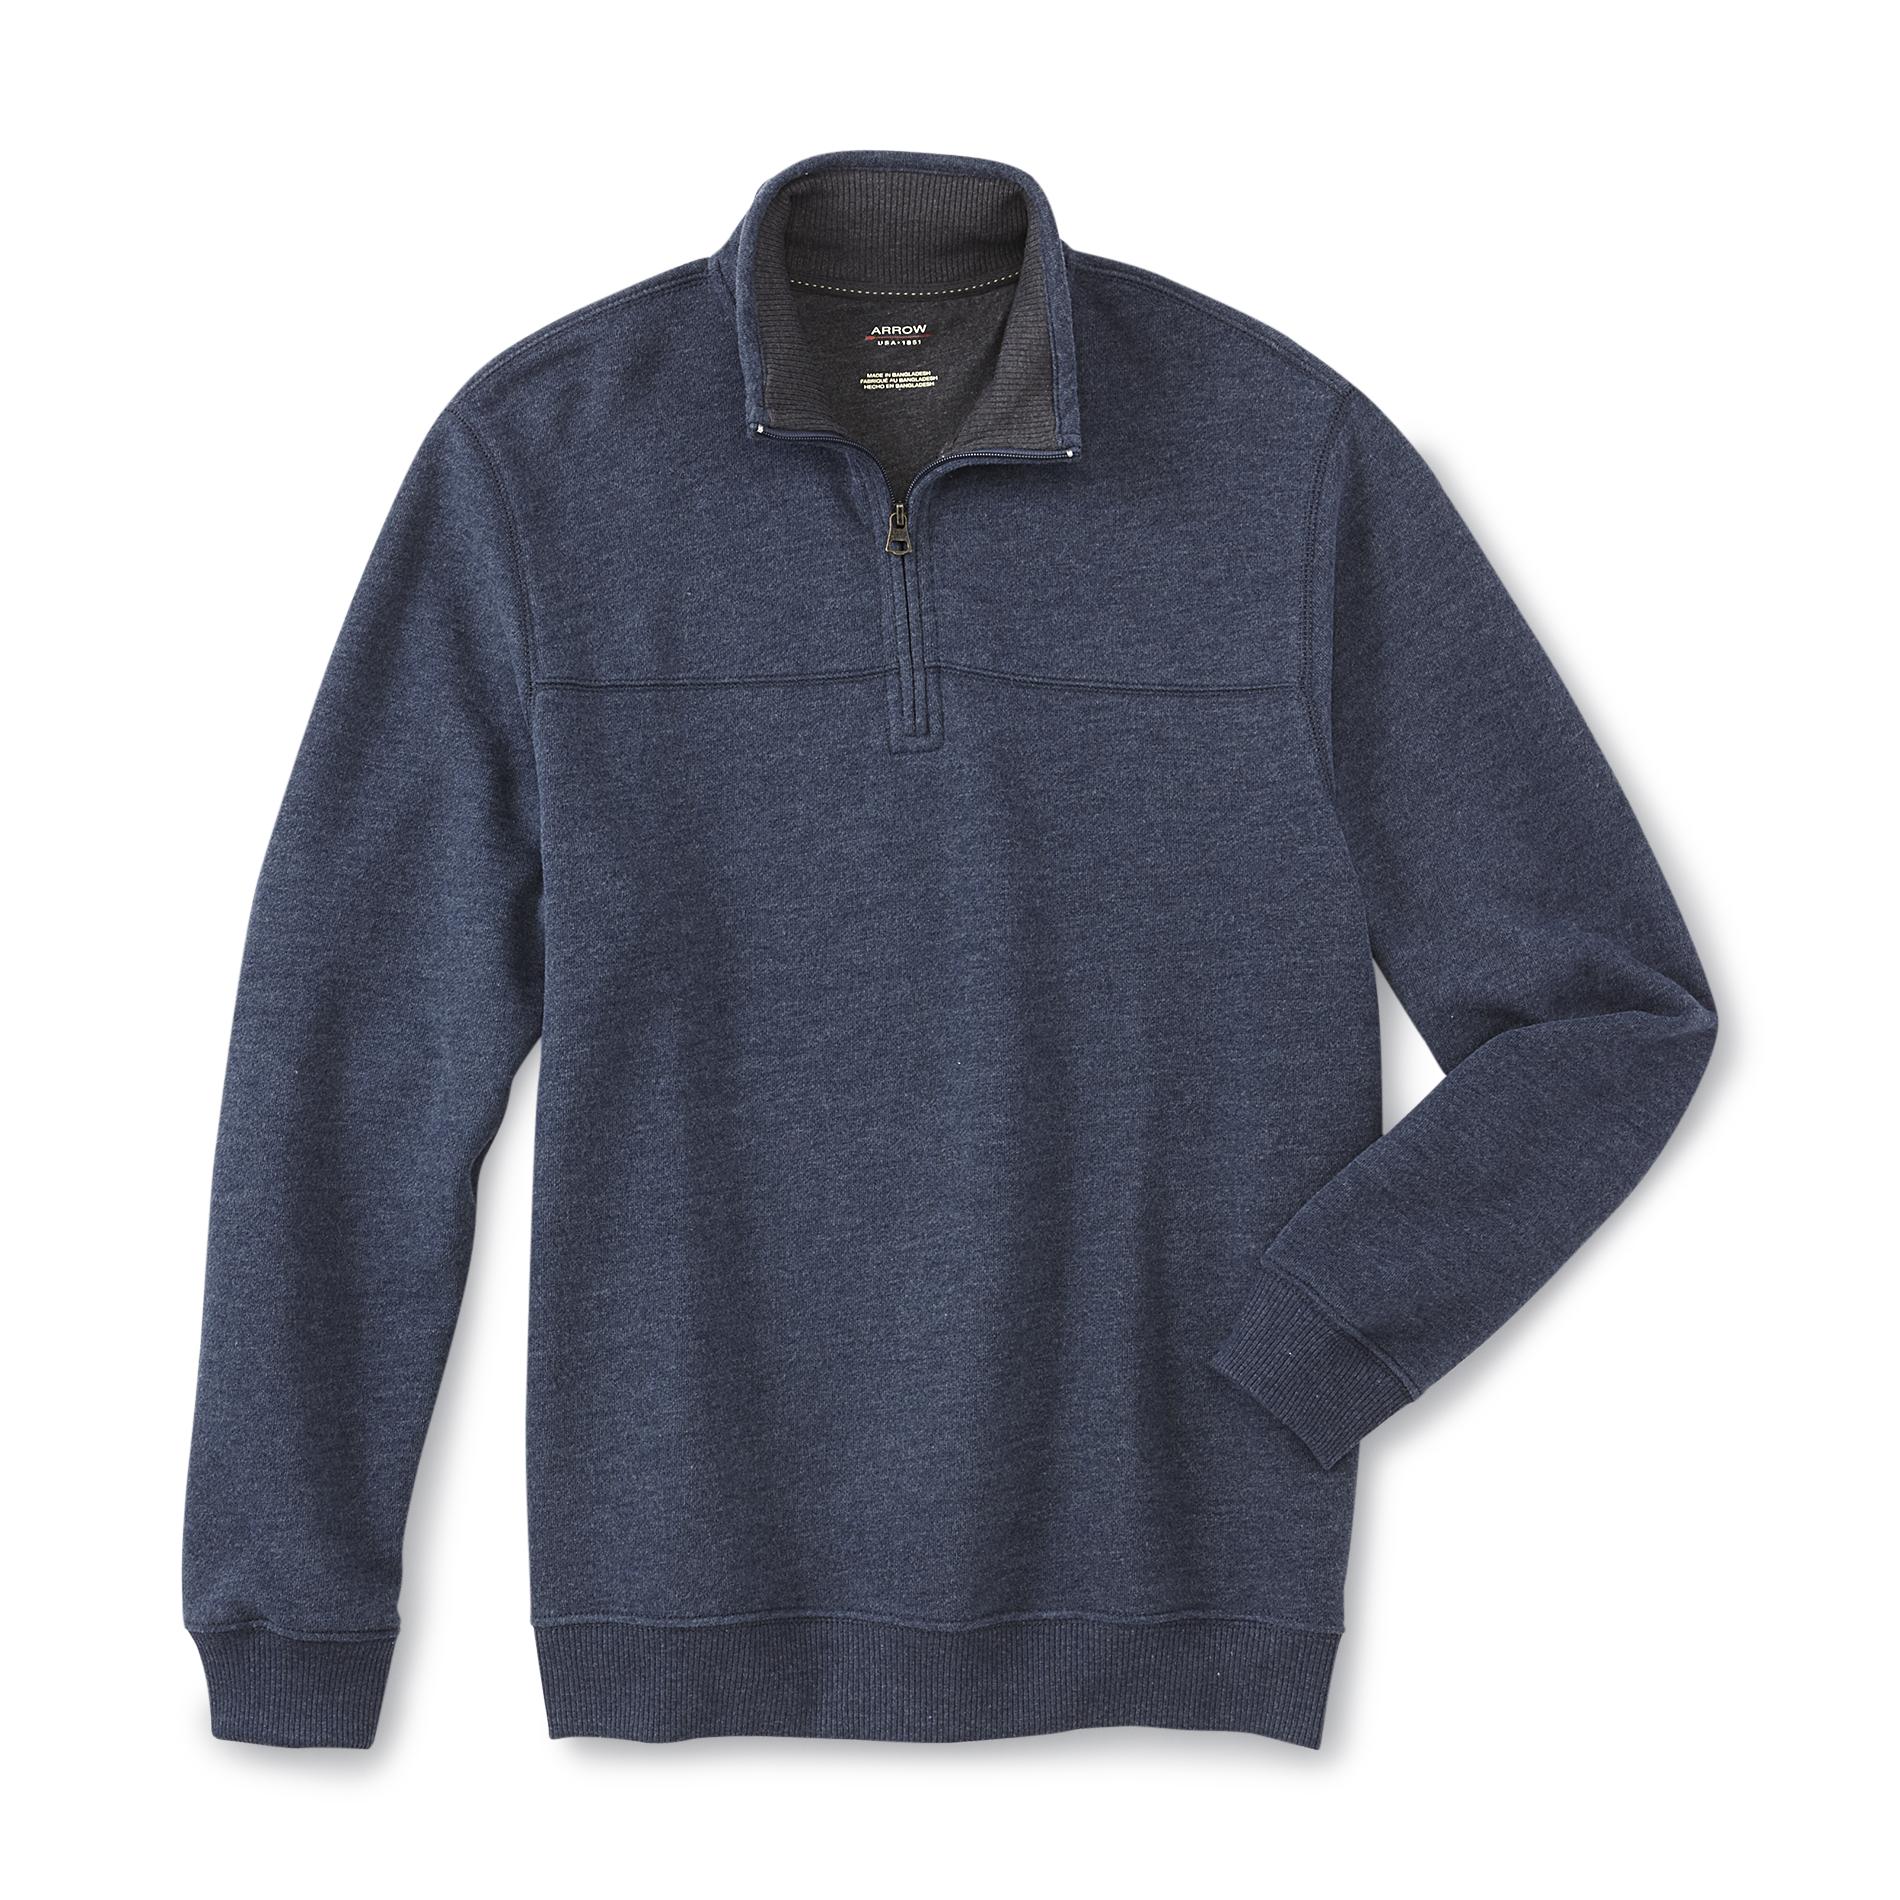 Arrow Men's Quarter-Zip Fleece-Lined Sweatshirt